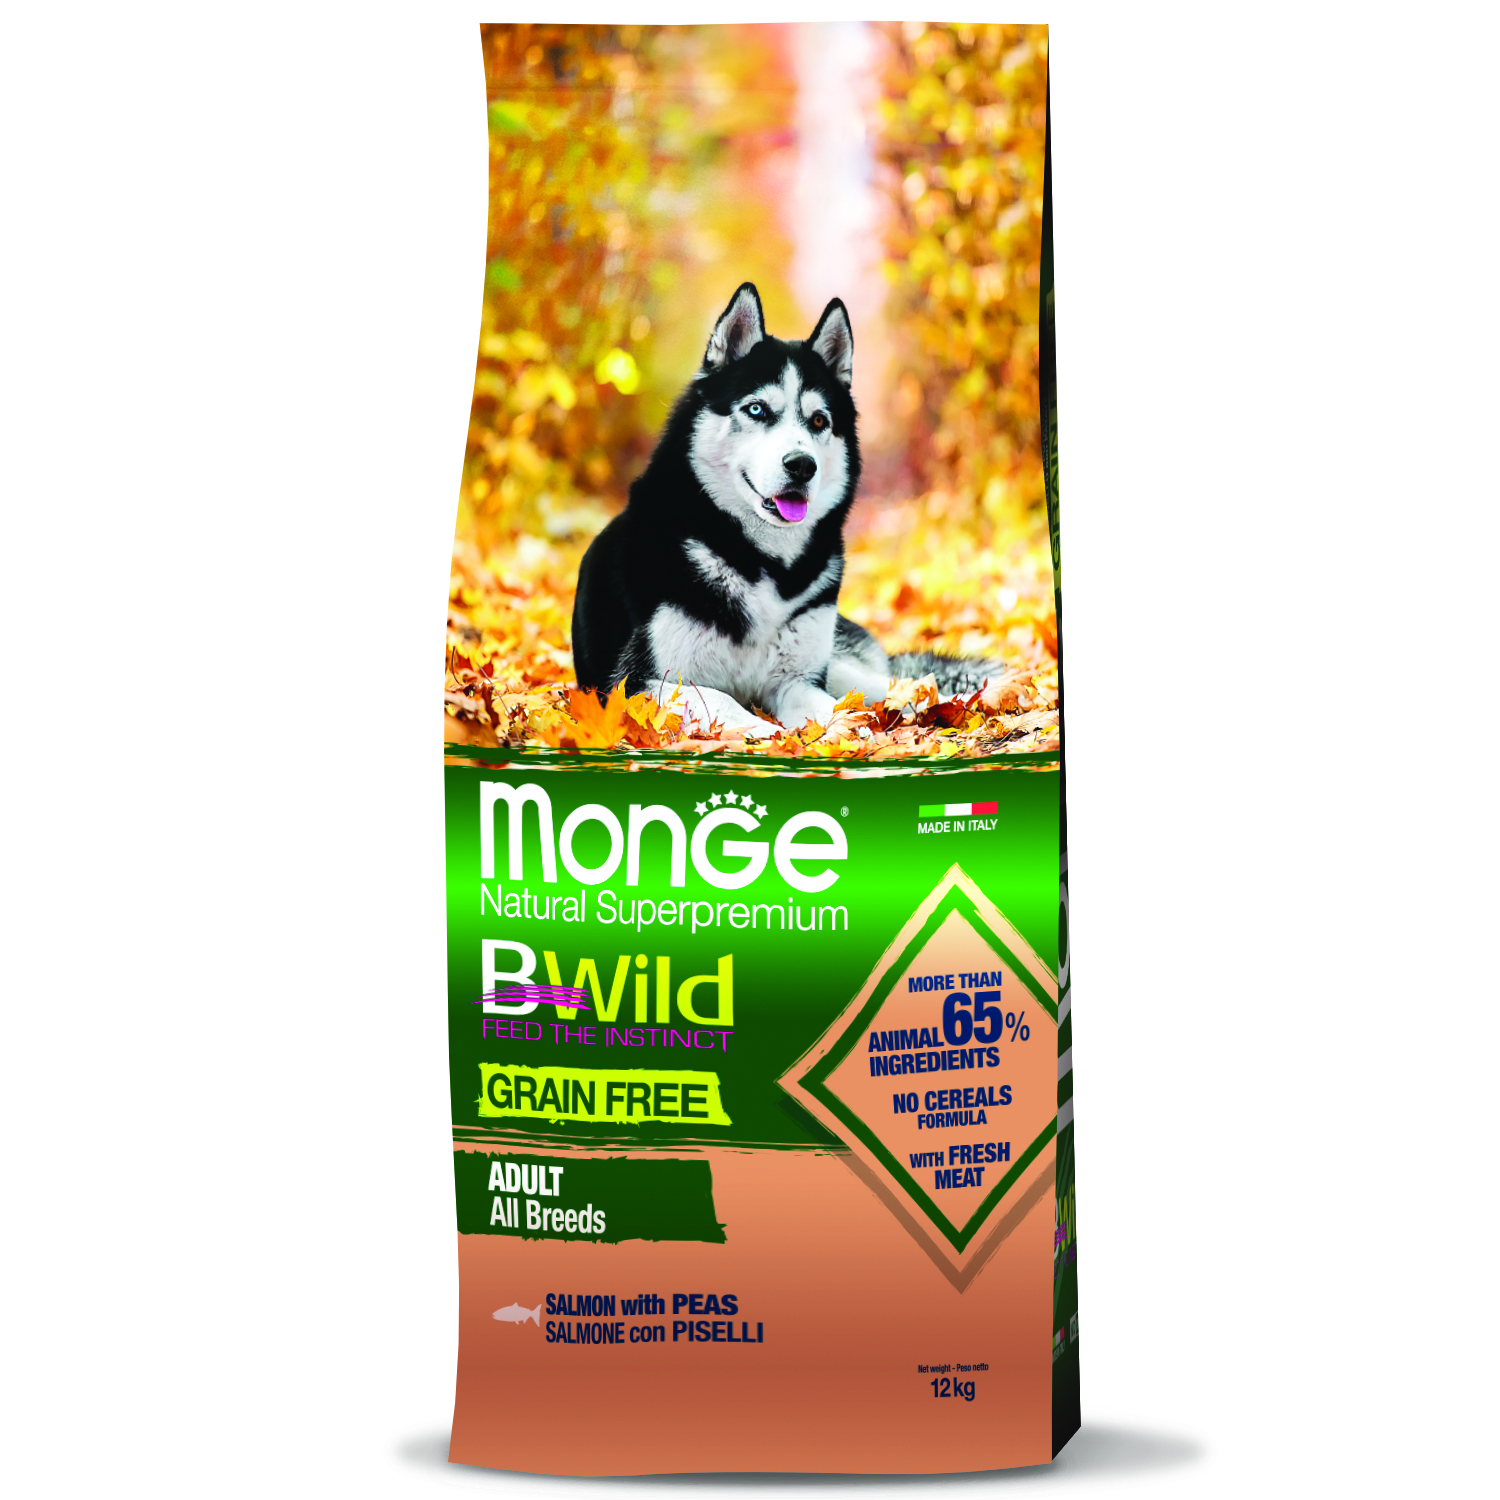 Сухой корм Monge Dog BWild GRAIN FREE для взрослых собак, беззерновой, из лосося 12 кг